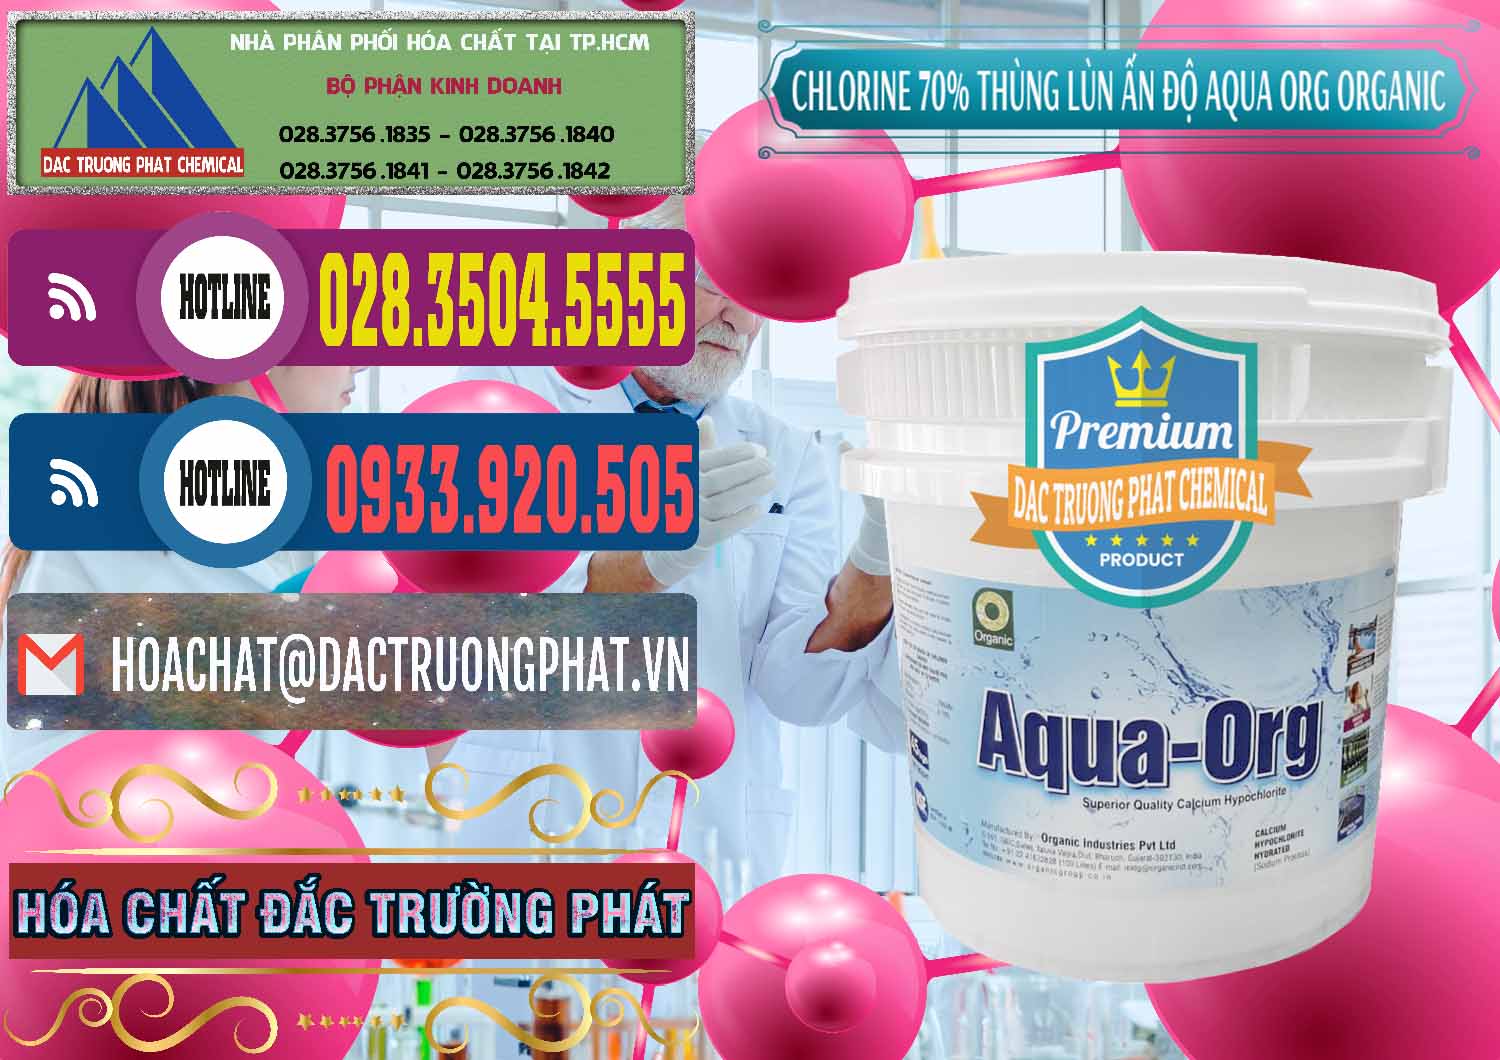 Chuyên bán _ cung cấp Chlorine – Clorin 70% Thùng Lùn Ấn Độ Aqua ORG Organic India - 0212 - Cty chuyên cung cấp _ nhập khẩu hóa chất tại TP.HCM - muabanhoachat.com.vn